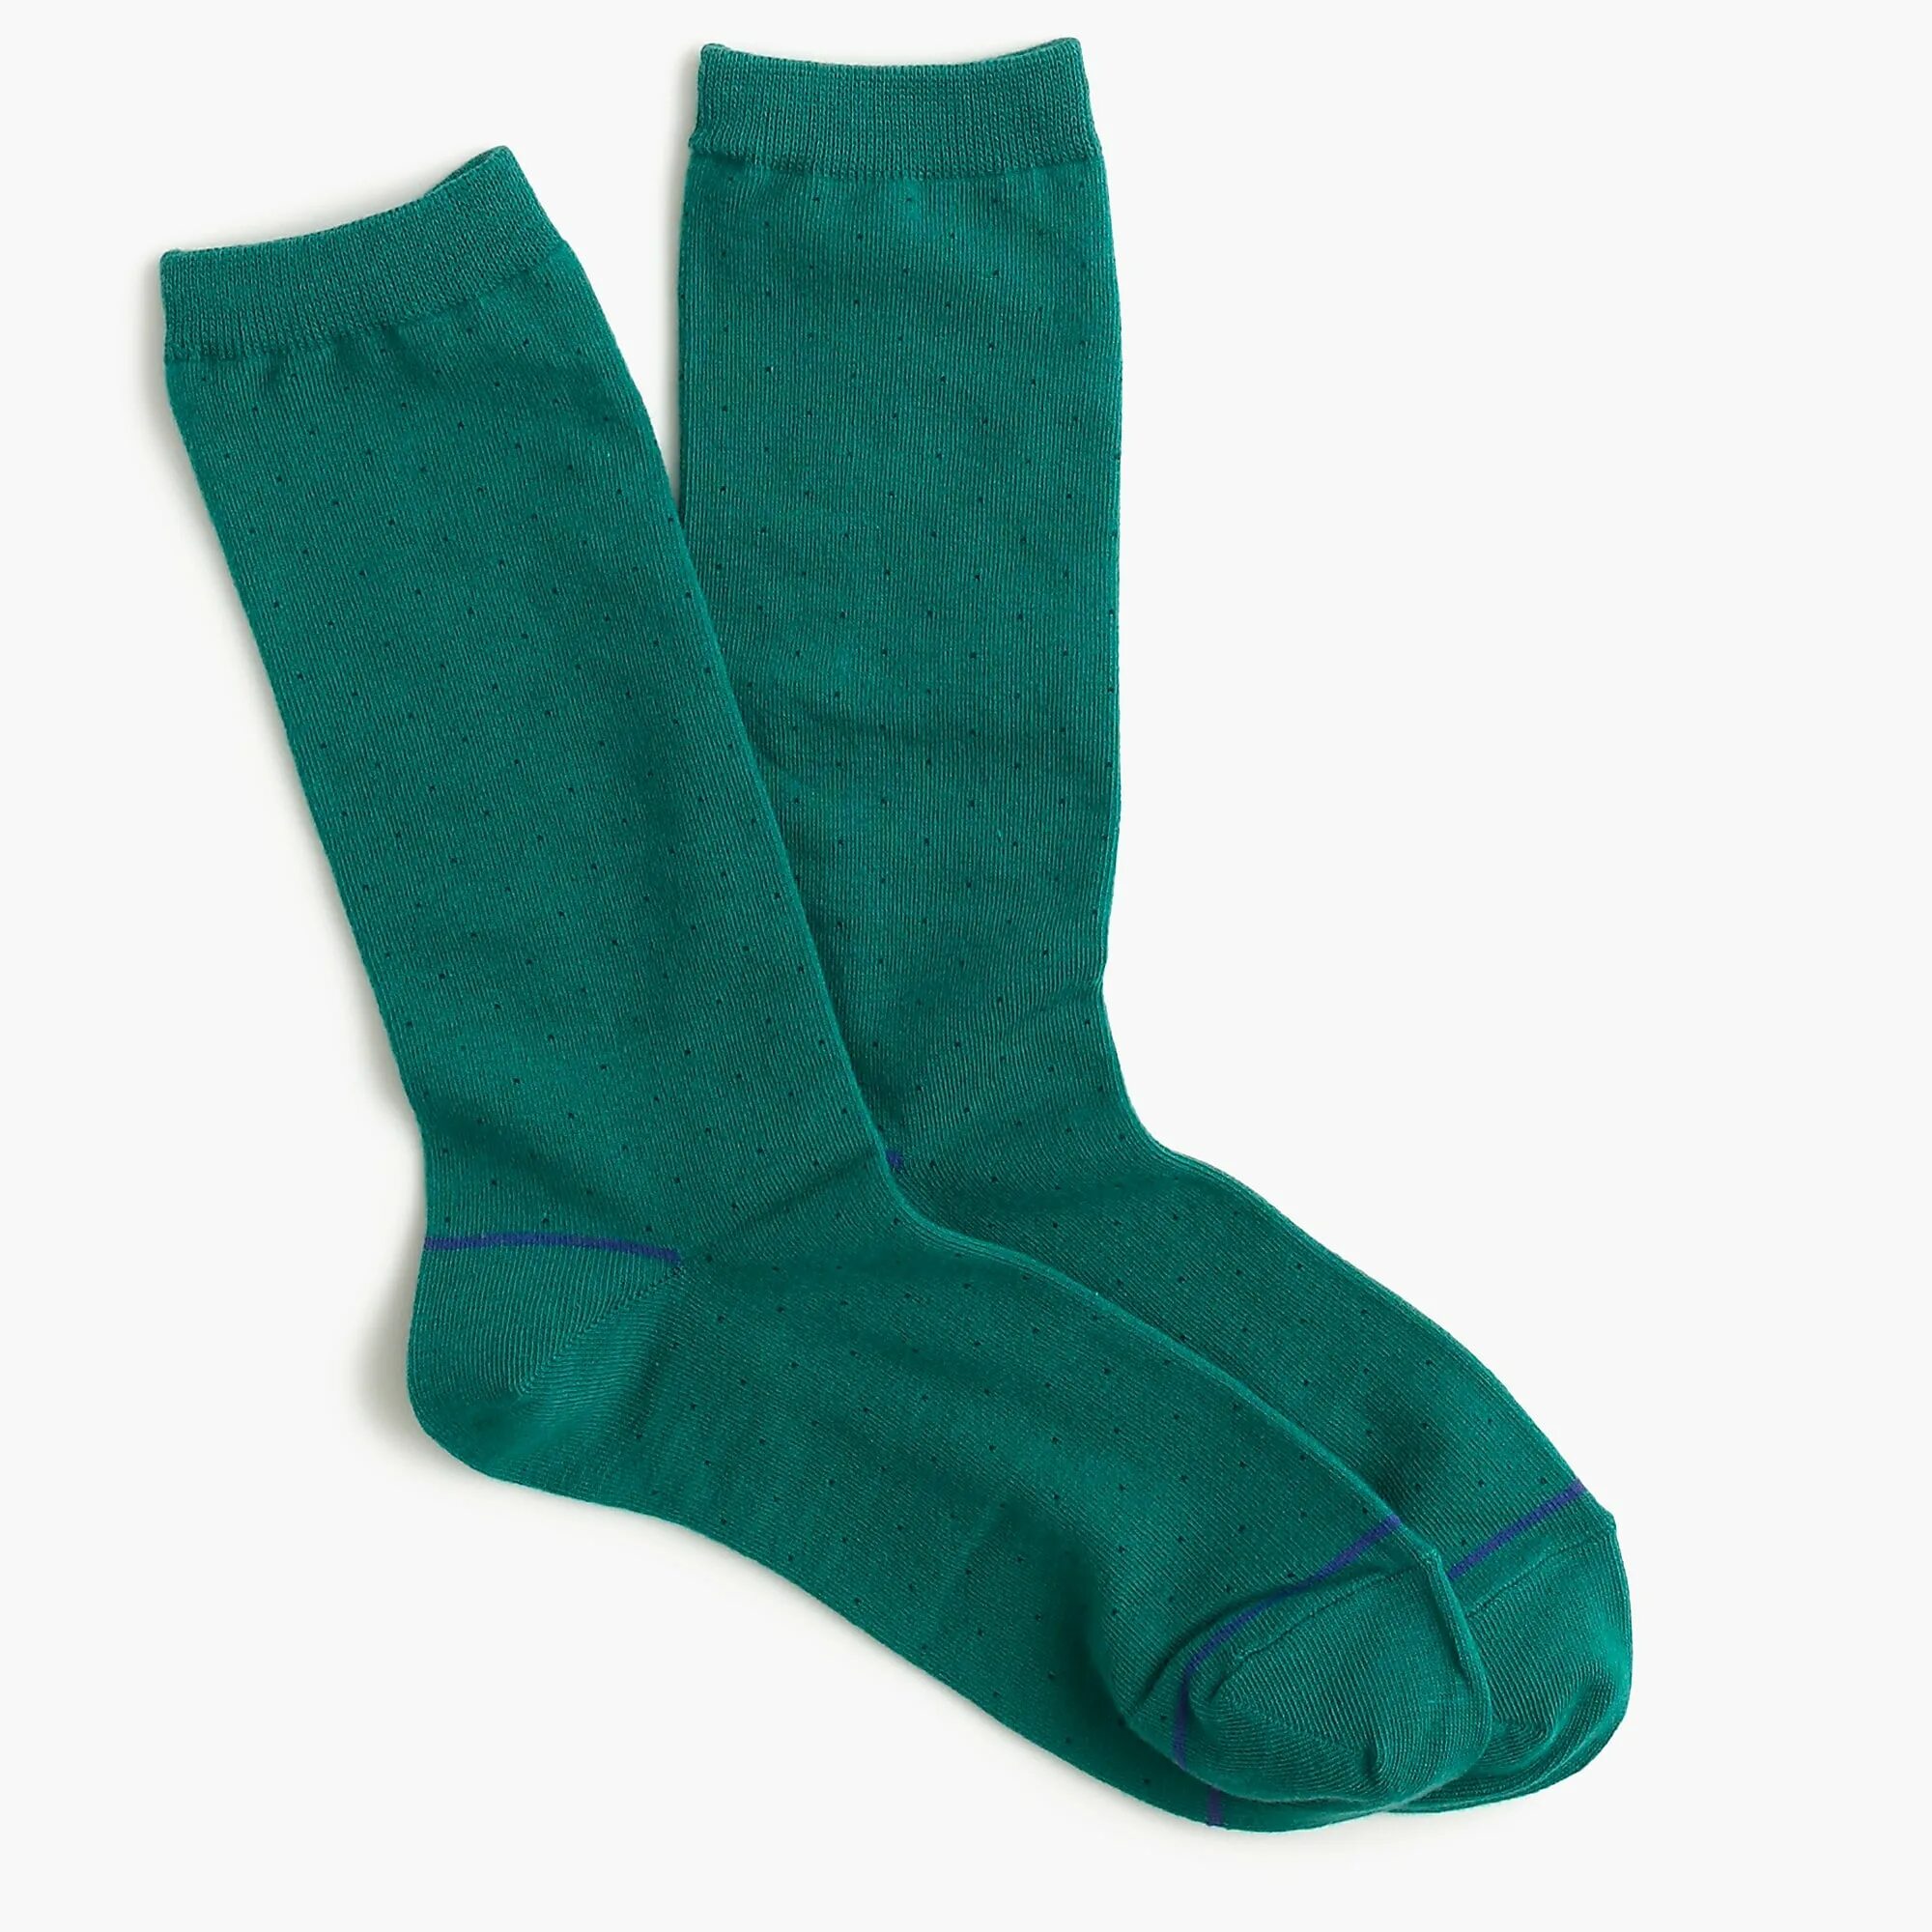 Зеленые носки. Салатовые носки. Носки зеленые однотонные. Салатовые носки женские. Носки зеленые купить